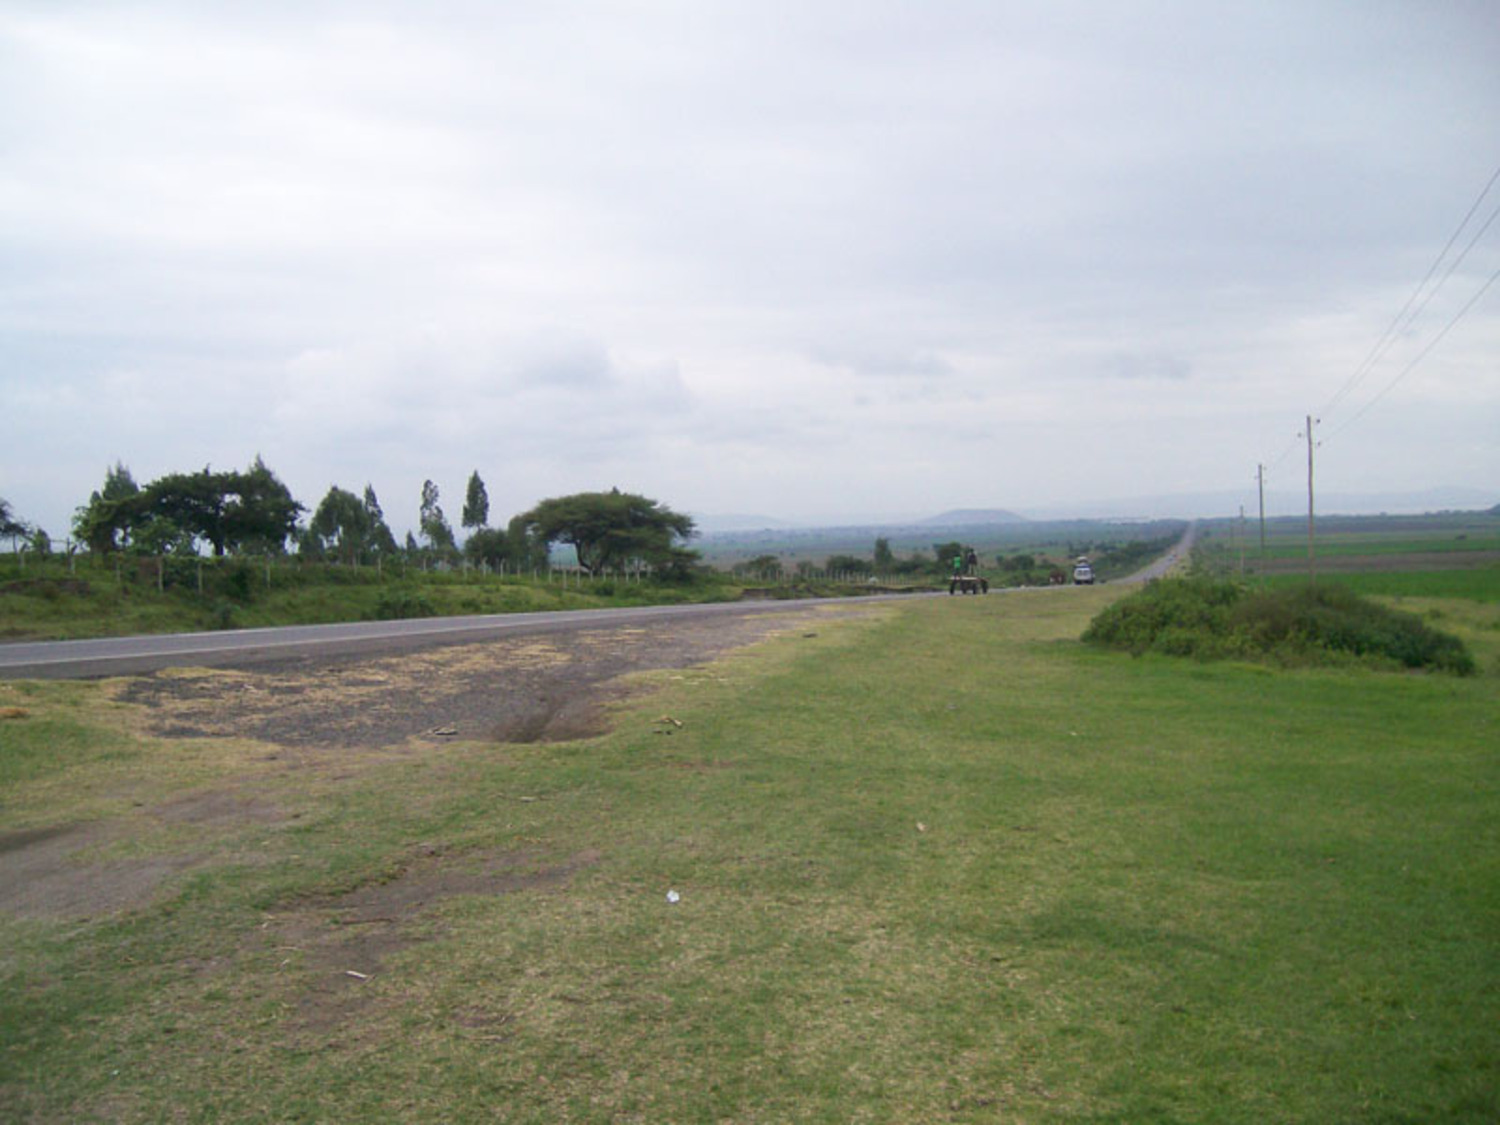 Main Highway from Addis Ababa to Awasa and Dilla